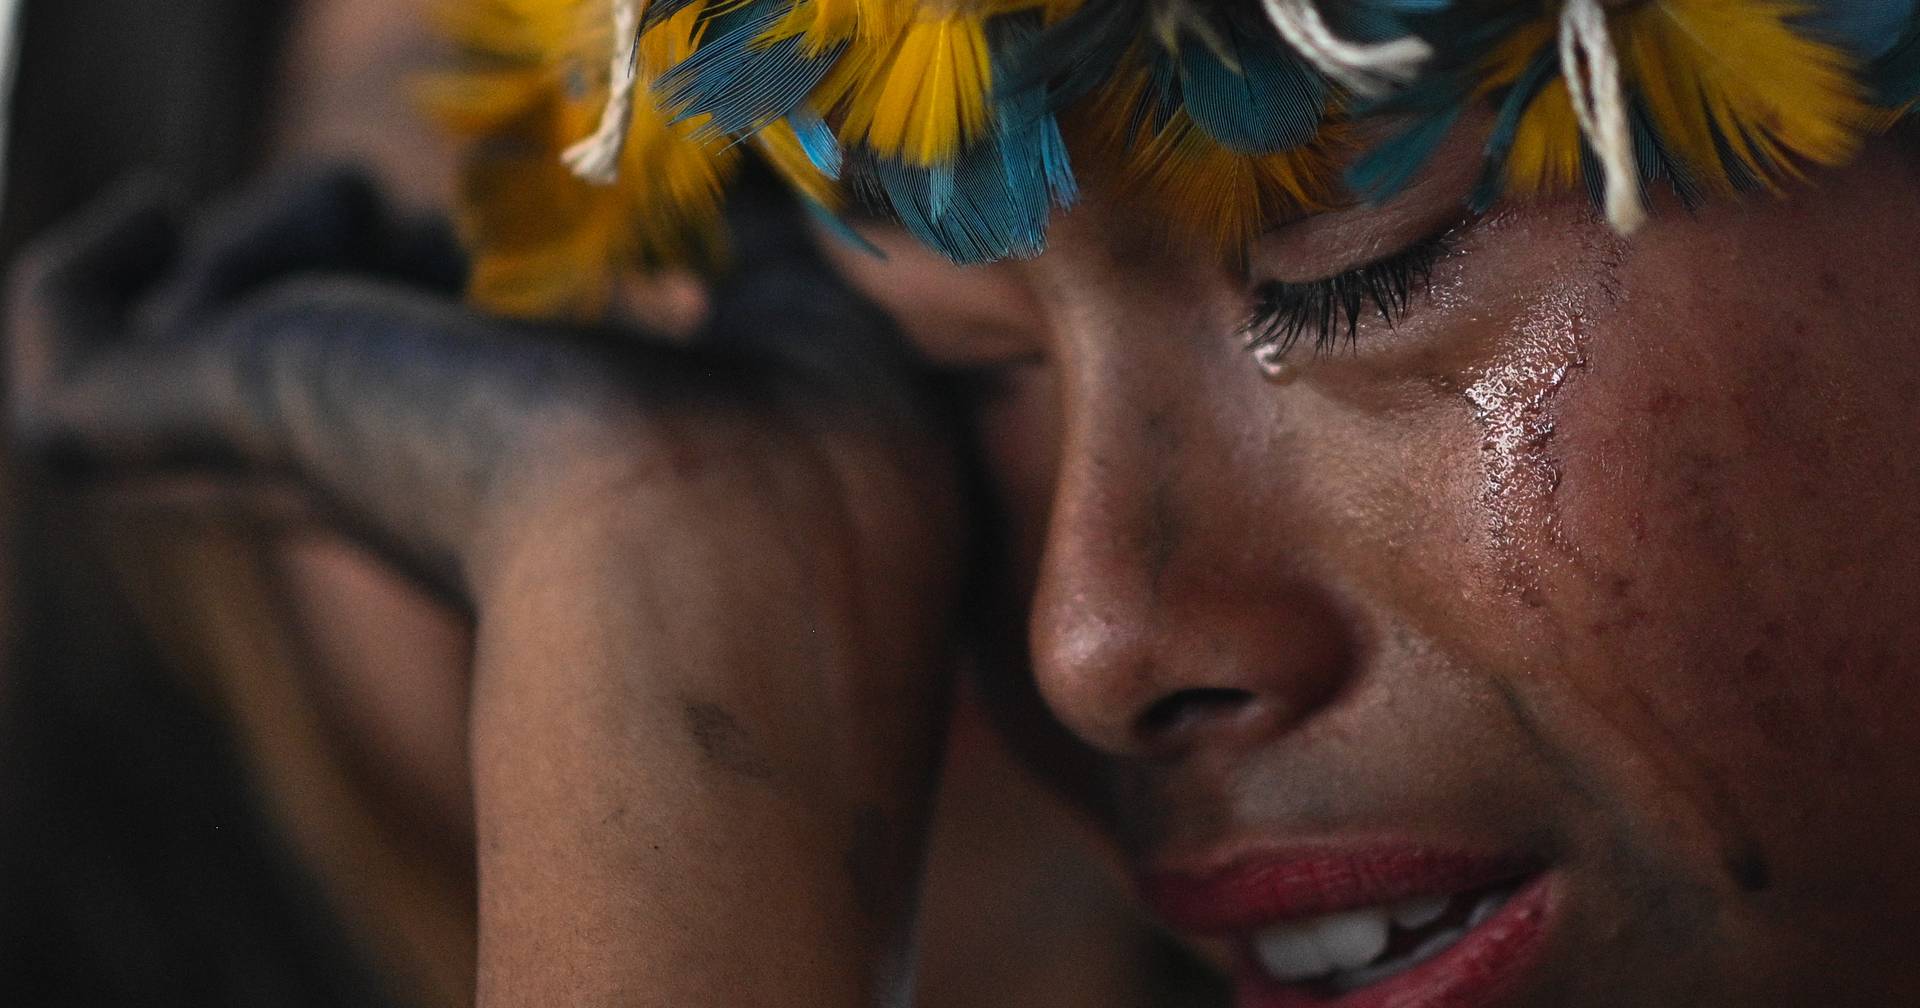 “Victoria histórica”: los indígenas brasileños lloran tras la decisión judicial